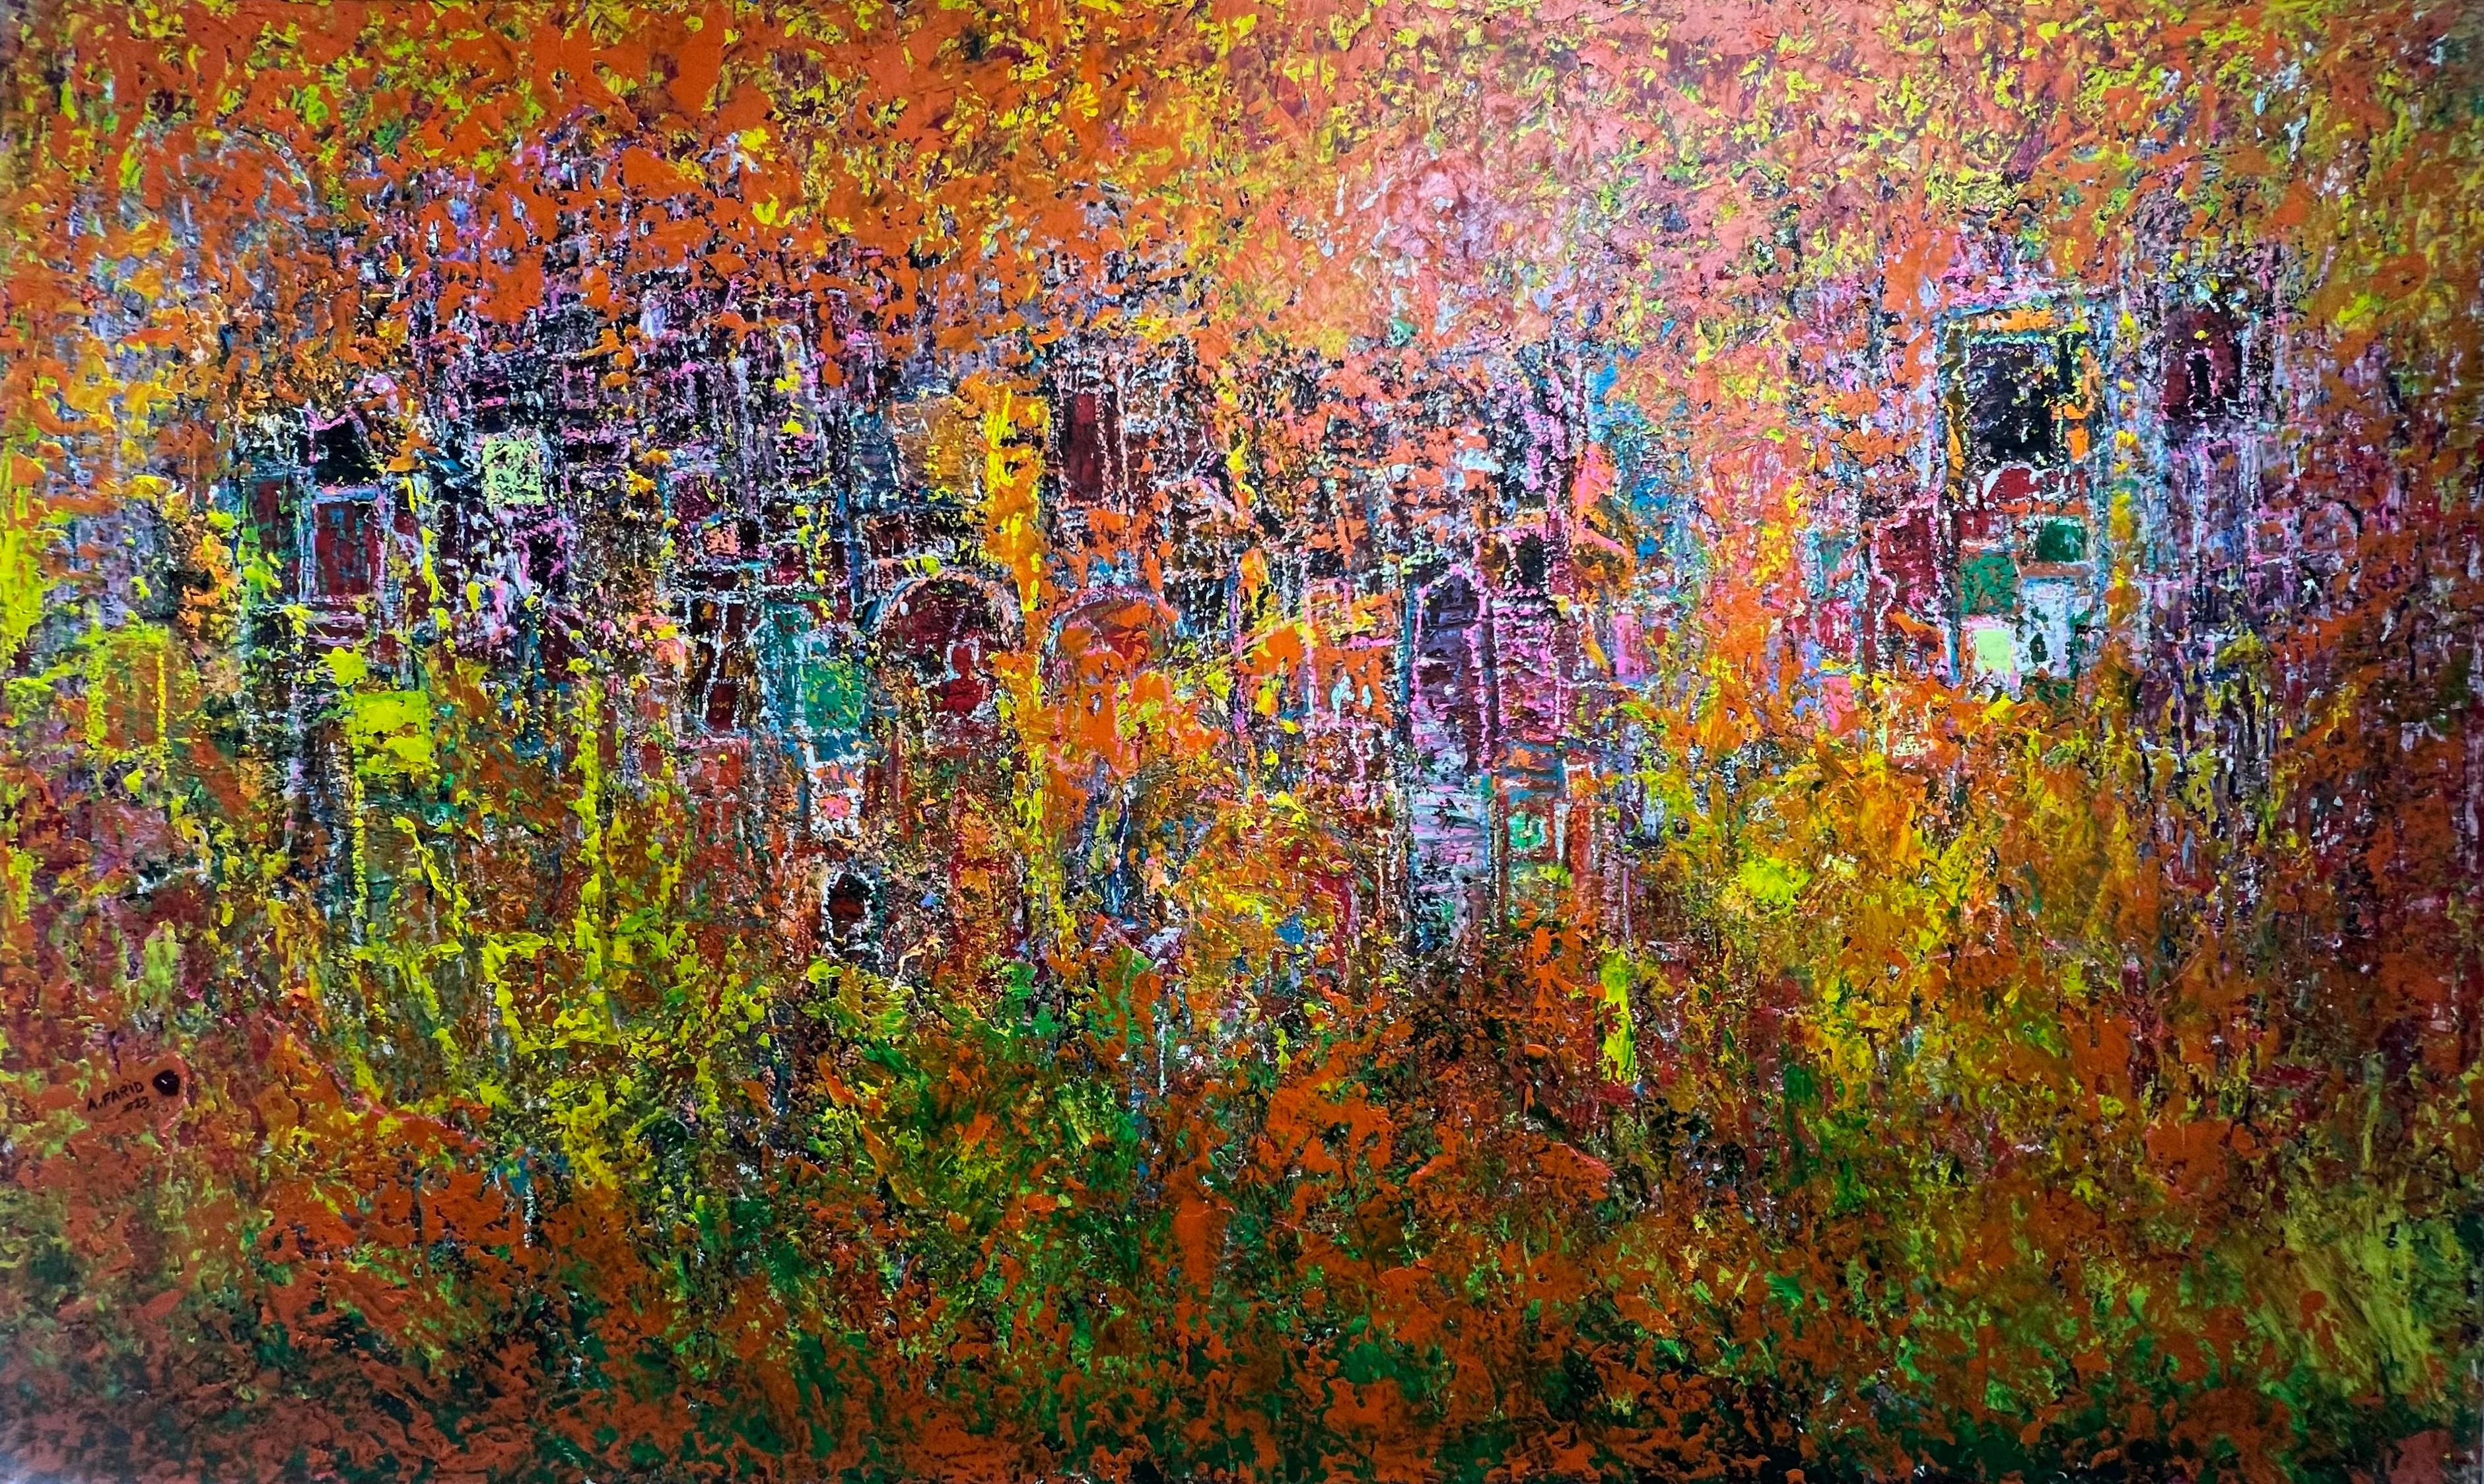 Abstraktes Gemälde „Glory“ aus Mischtechnik 47" x 79" Zoll von Ahmed Farid

Mischtechnik auf Leinwand

Farid wurde 1950 in Kairo, Ägypten, geboren, wo er heute lebt und arbeitet. Er ist ein autodidaktischer ägyptischer Maler, der eine private